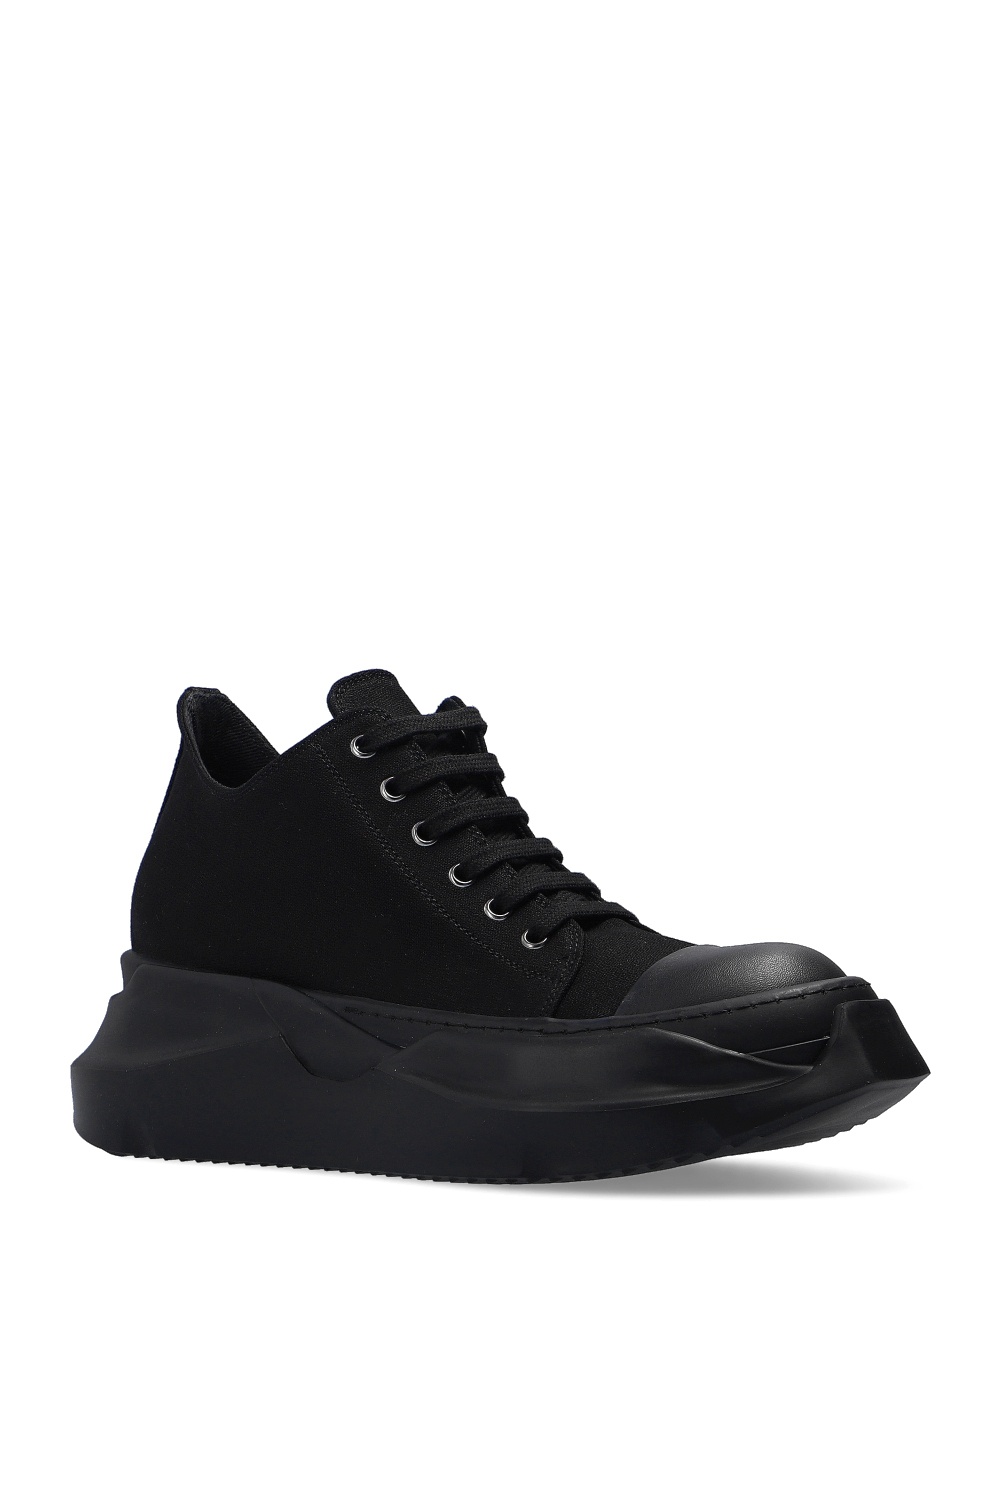 Rick Owens DRKSHDW Platform Sneakers in Black